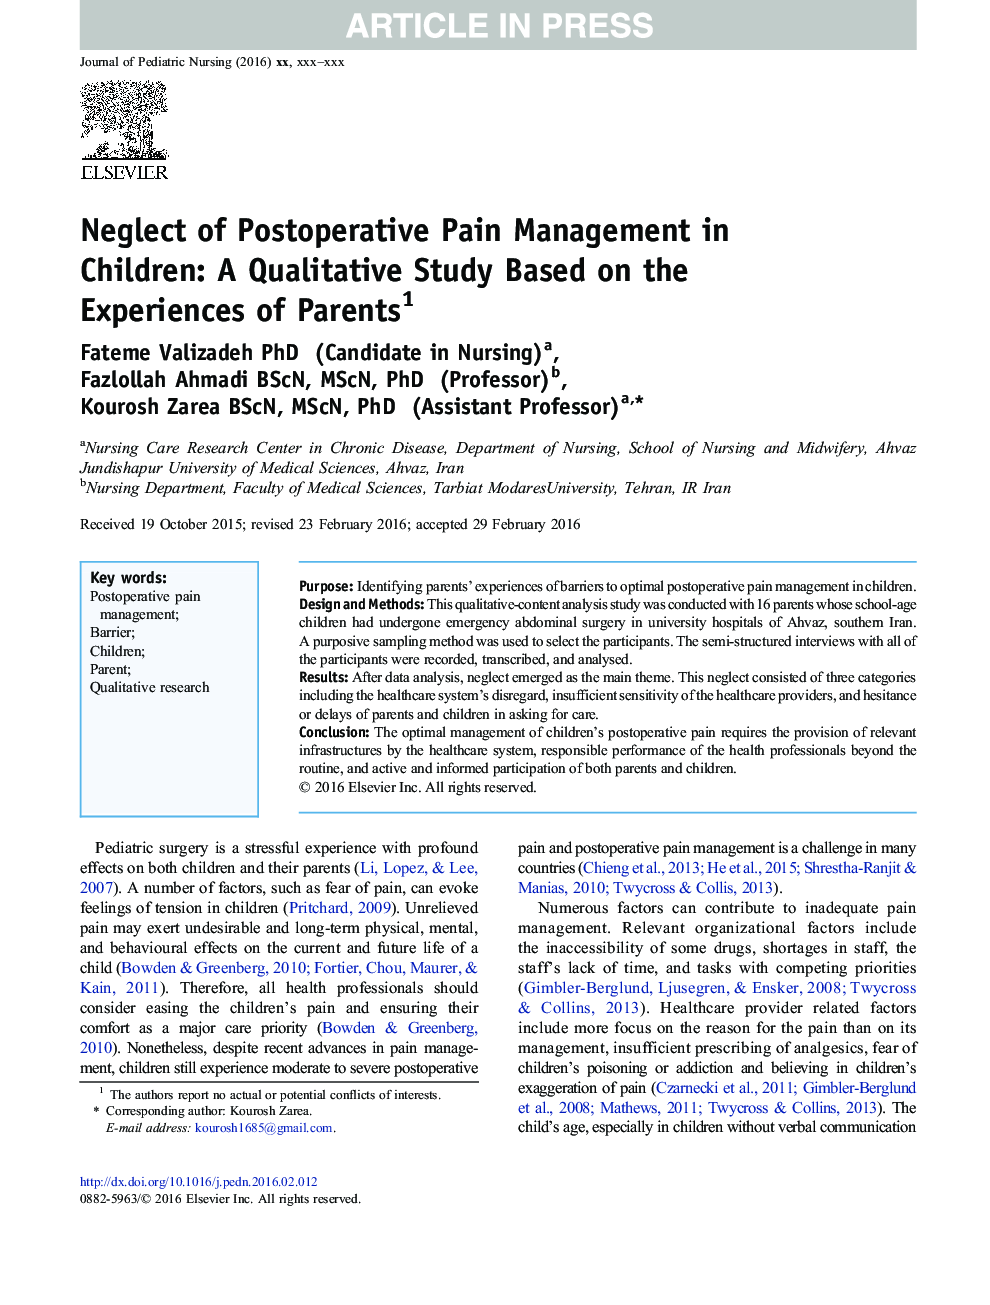 نادیده گرفتن مدیریت درد بعد از عمل در کودکان: یک مطالعه کیفی بر اساس تجربیات والدین 